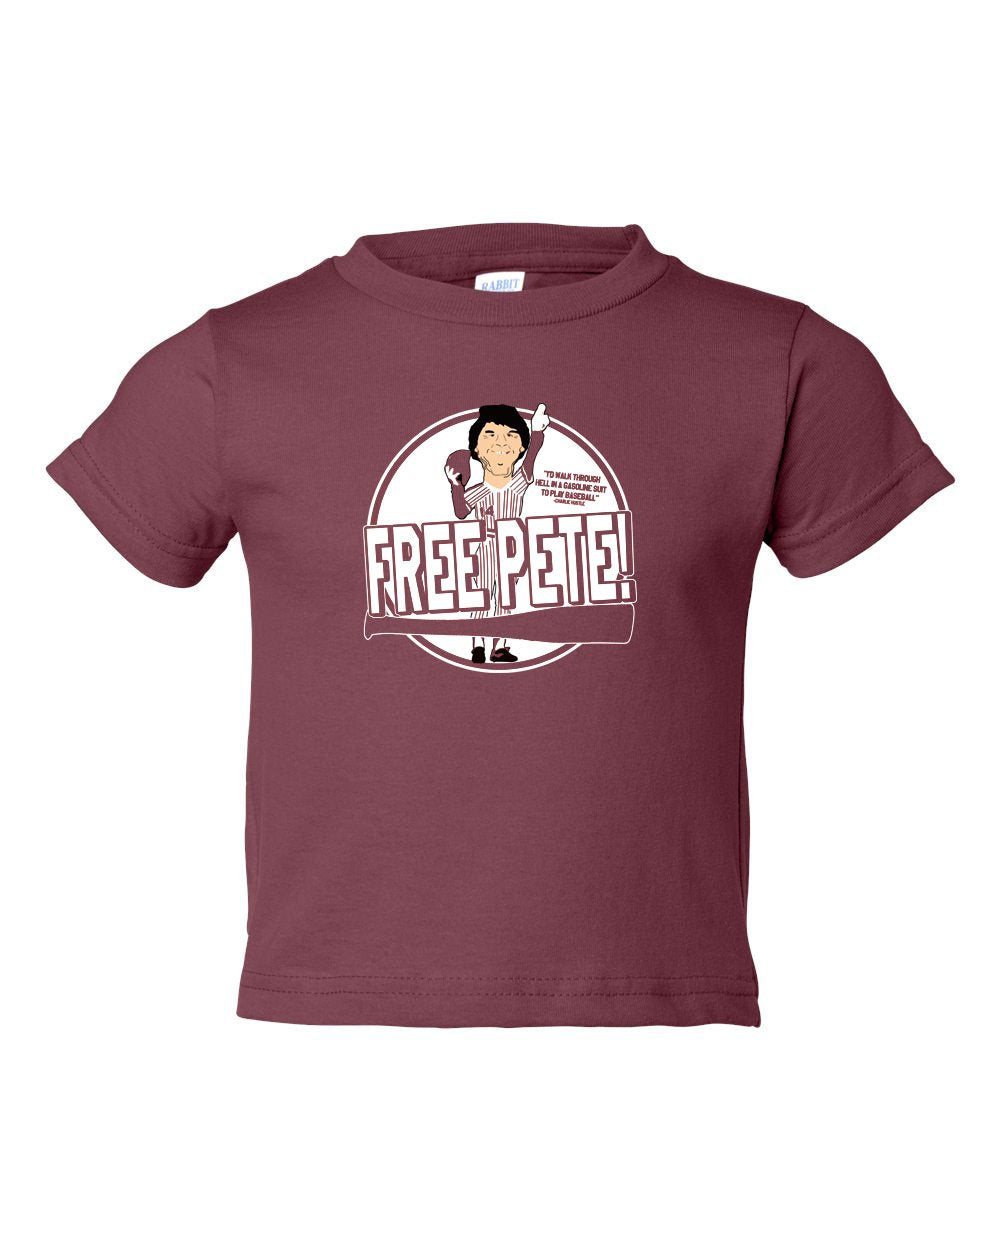 Free Pete TODDLER T-Shirt